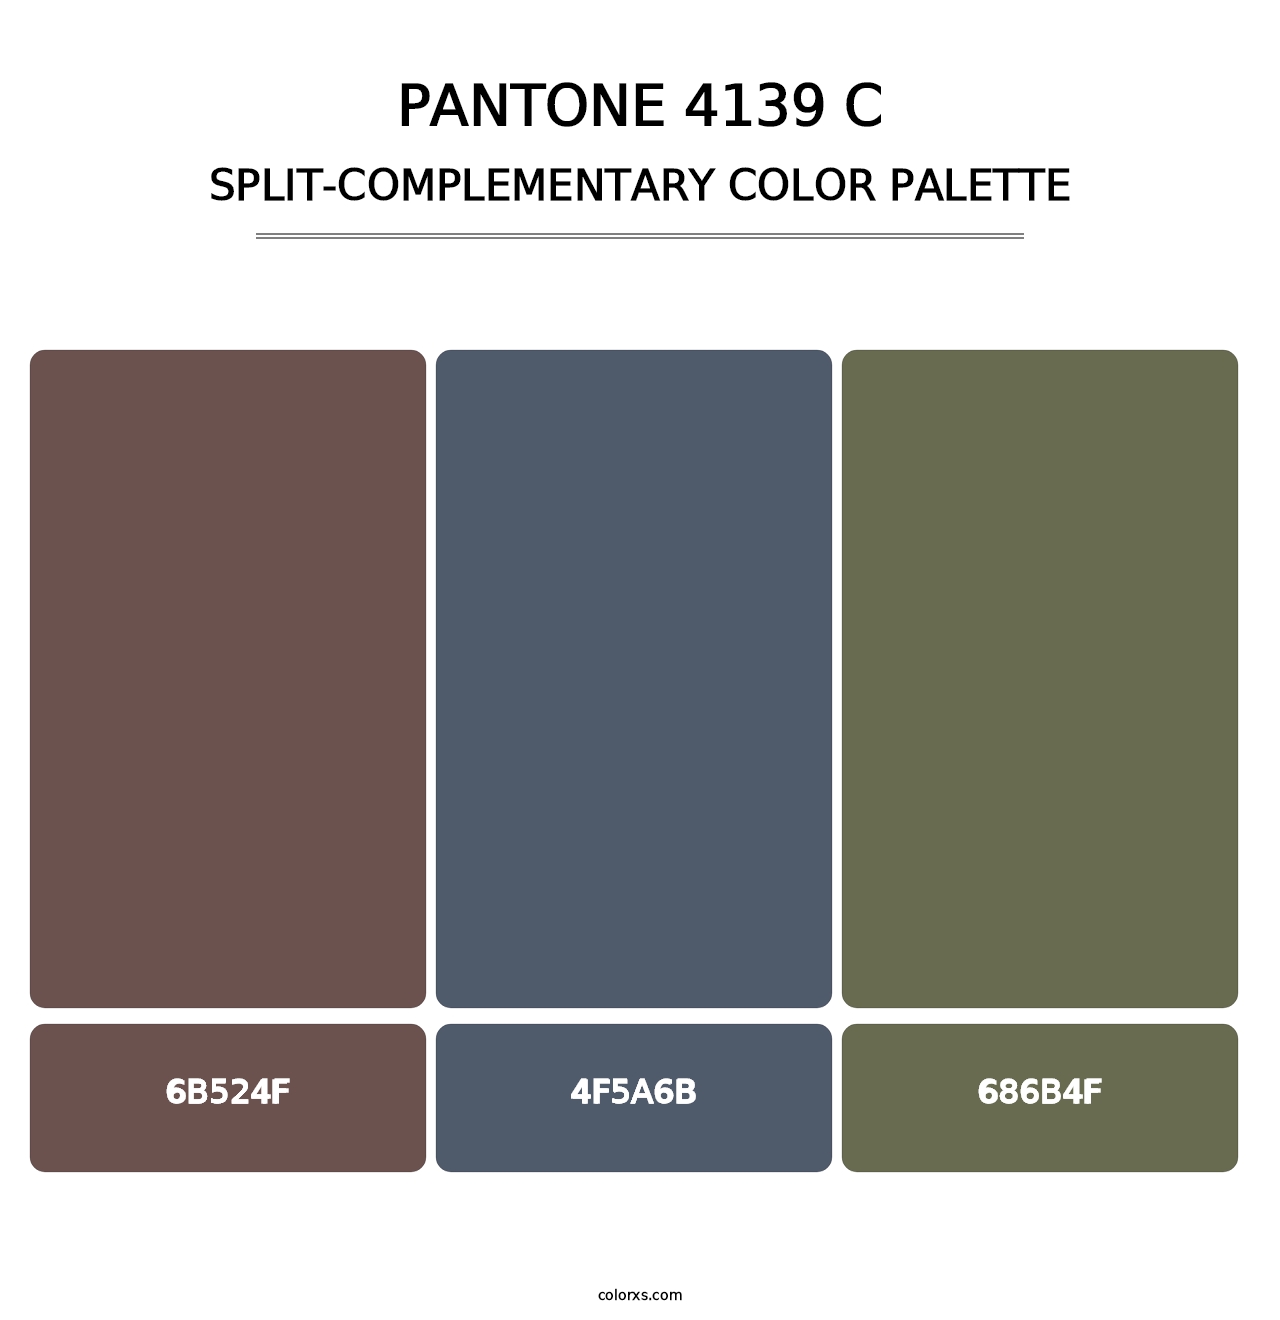 PANTONE 4139 C - Split-Complementary Color Palette